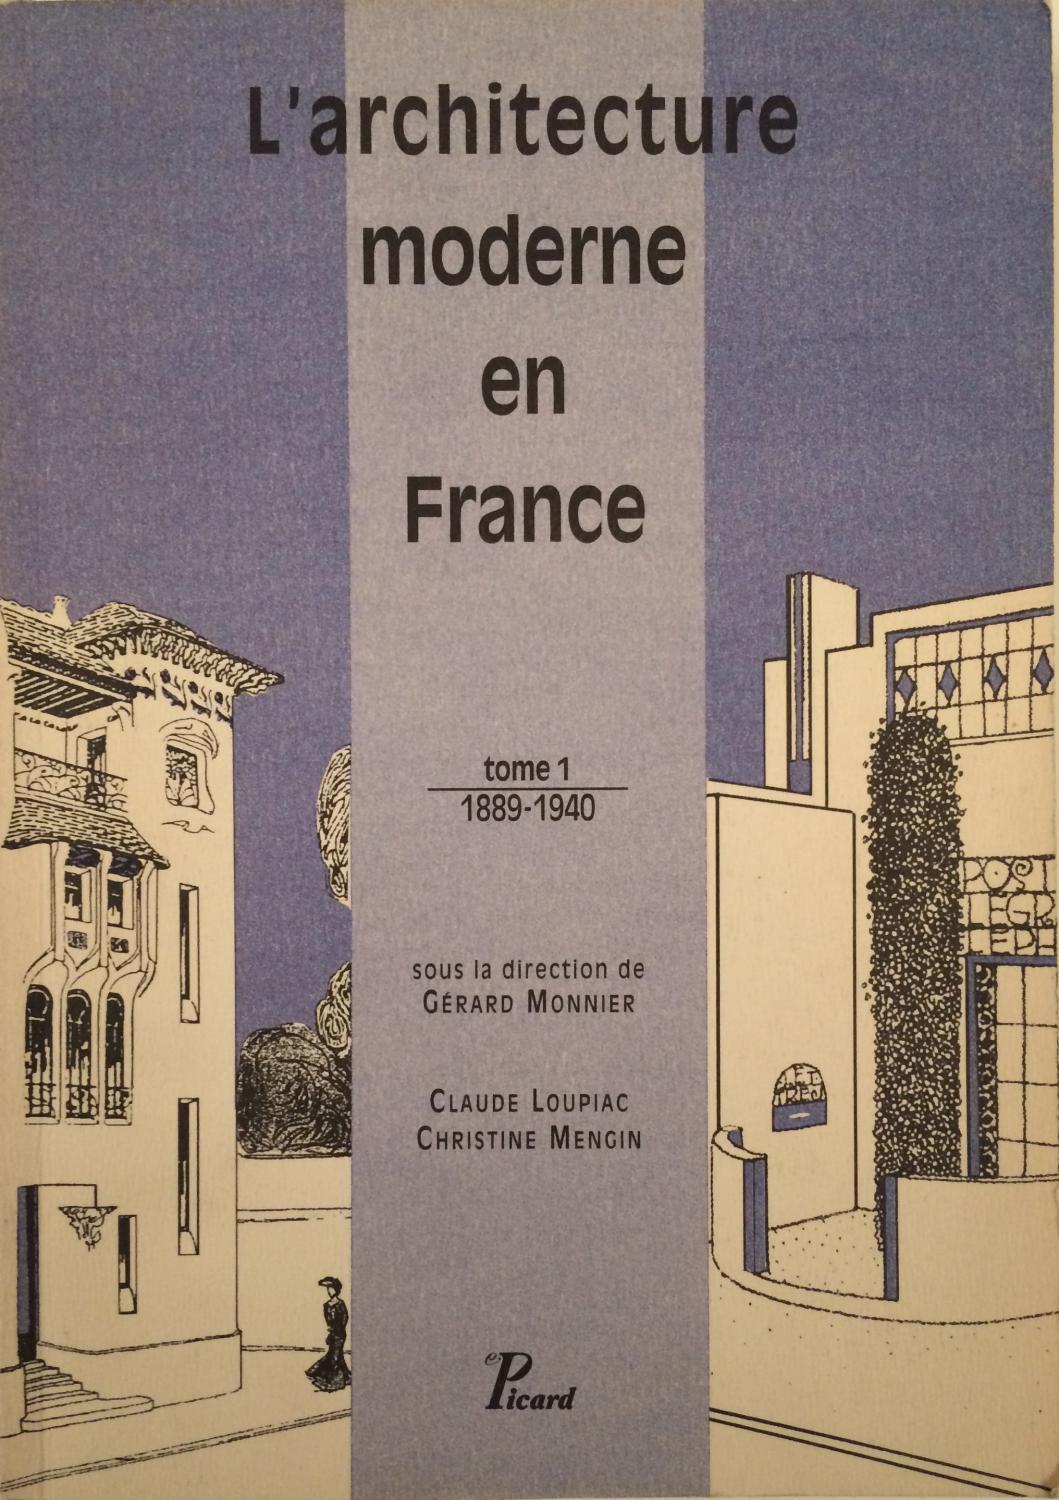 L'architecture moderne en France tome 1 1889-1940 by Monnier Gérard ...